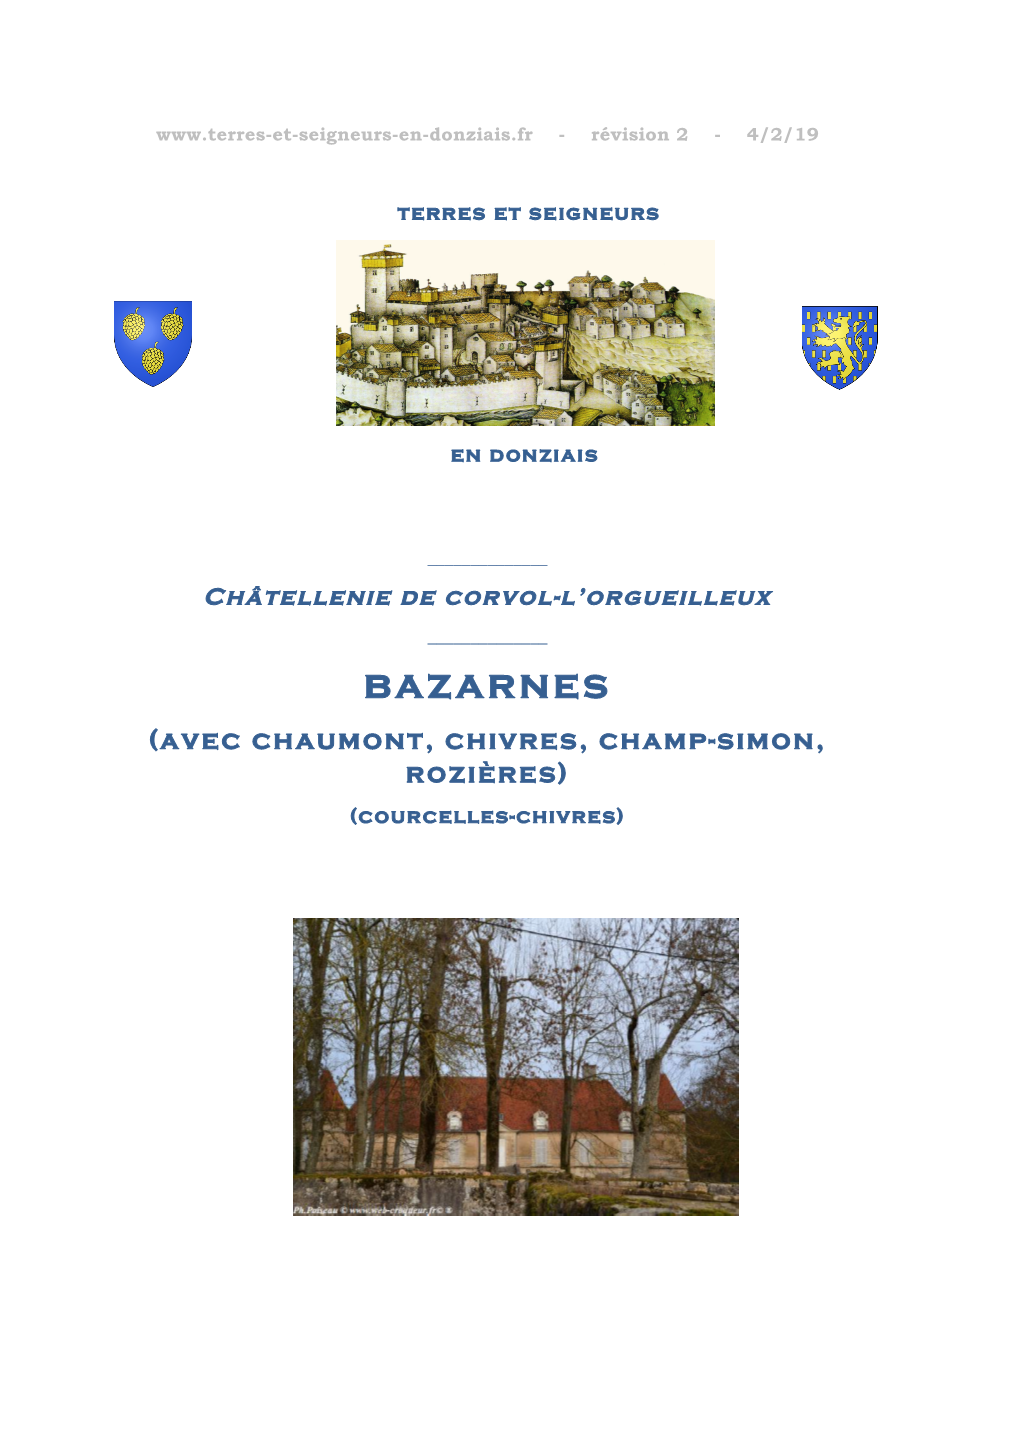 Bazarnes (Avec Chaumont, Chivres, Champ-Simon, Rozières) (Courcelles-Chivres)